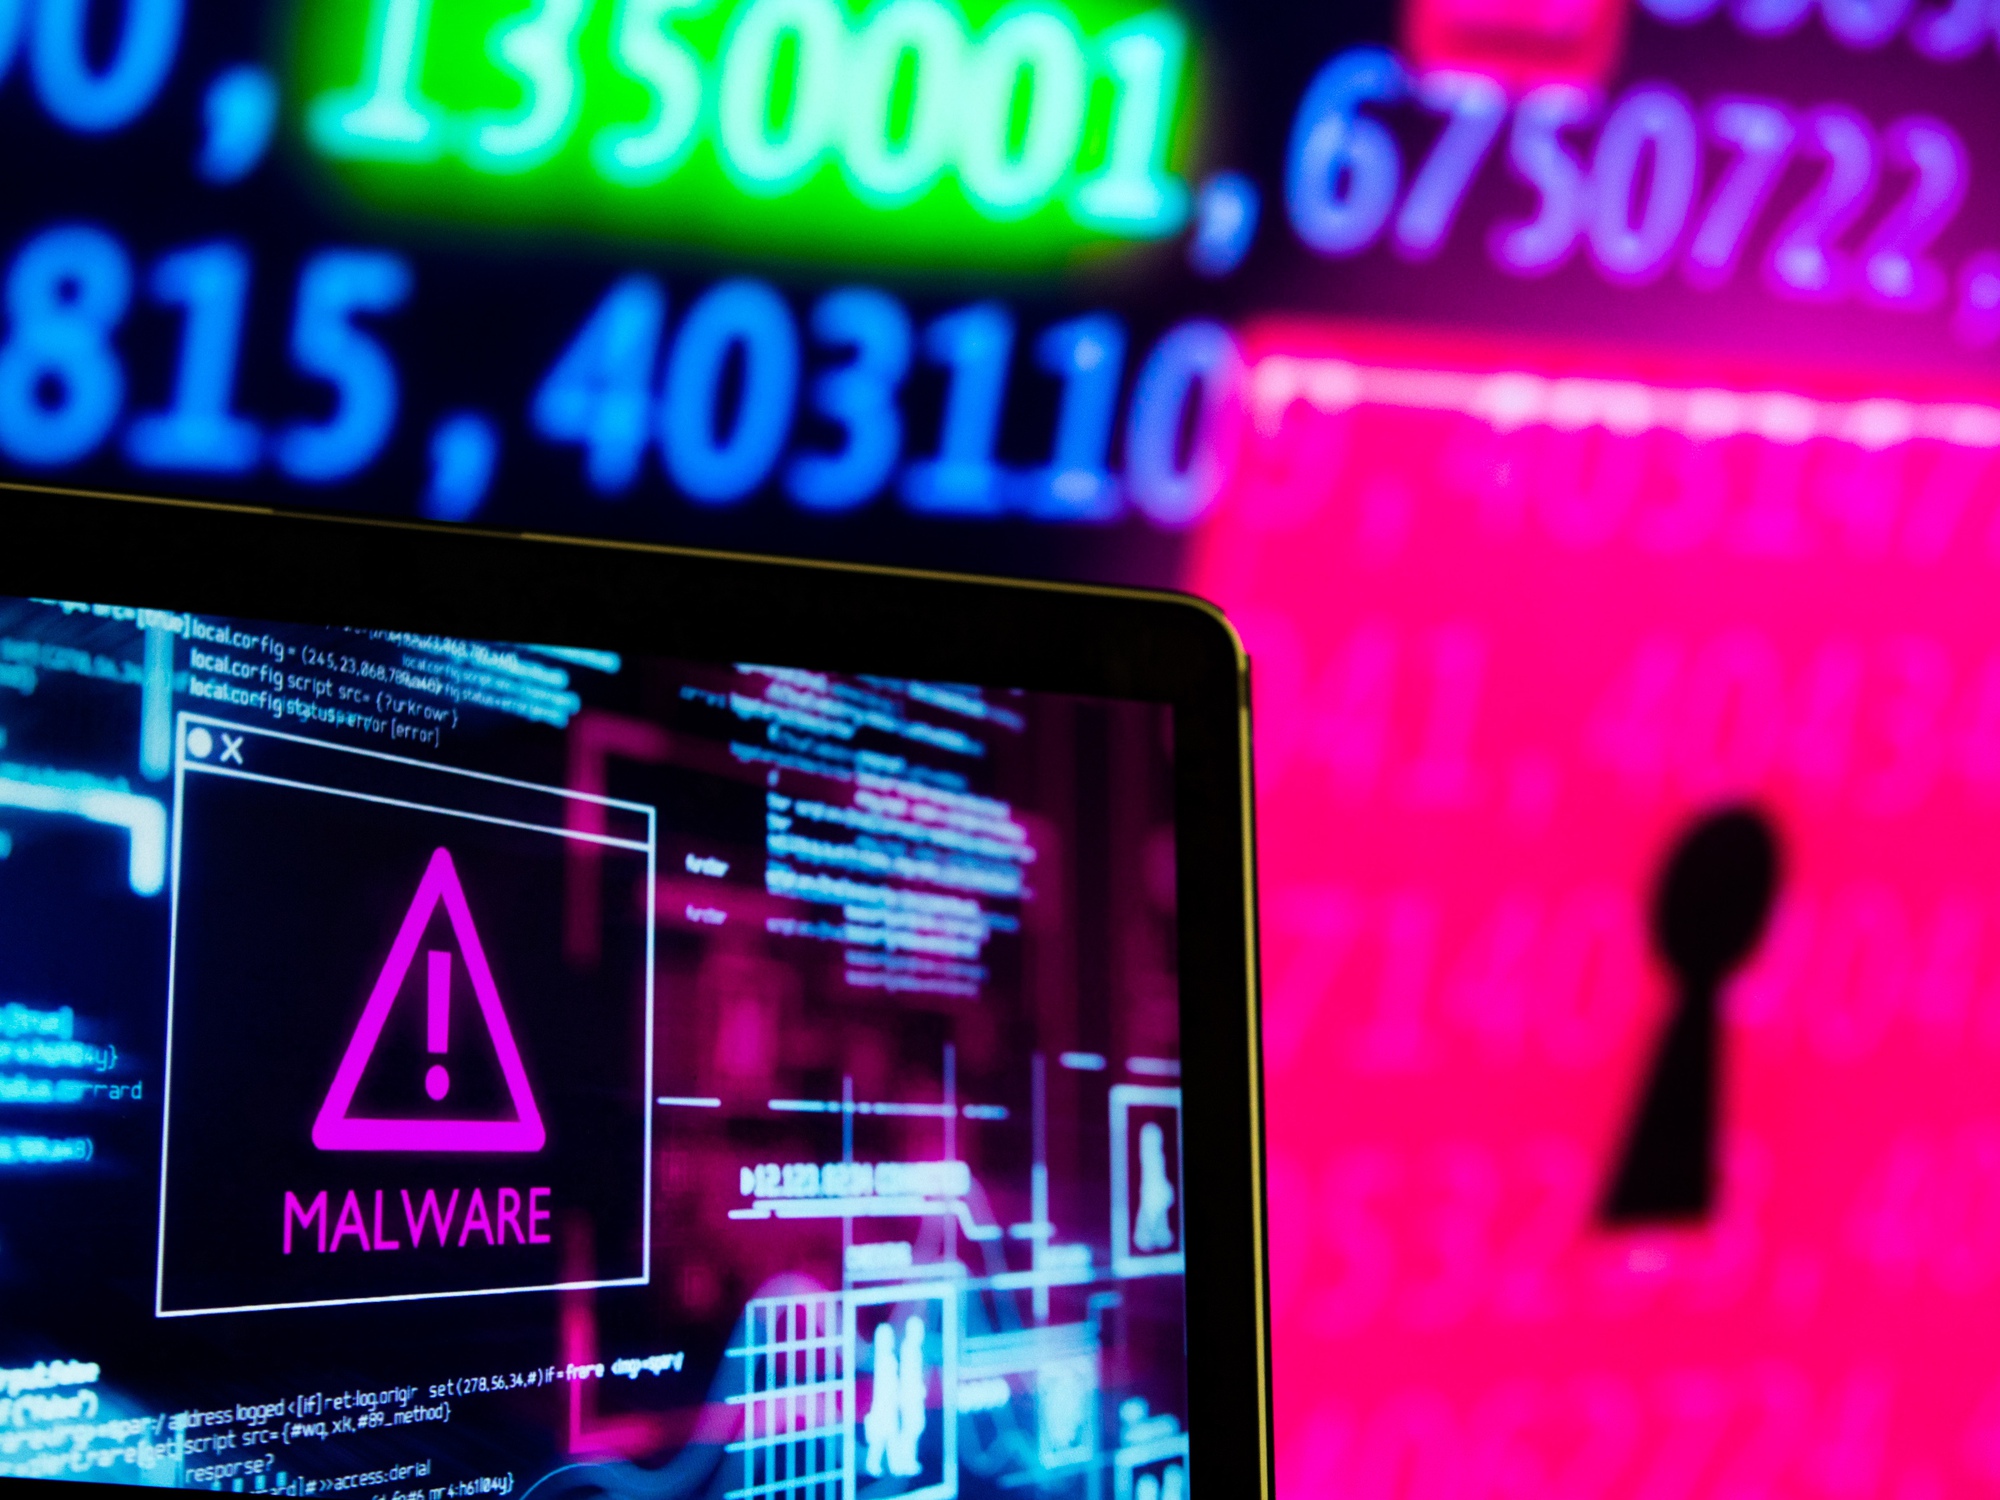 Tội phạm mạng có thể có quyền truy cập vào các công cụ chiến tranh mạng do nhà nước phát triển thông qua dark web. Ảnh: @AFP.